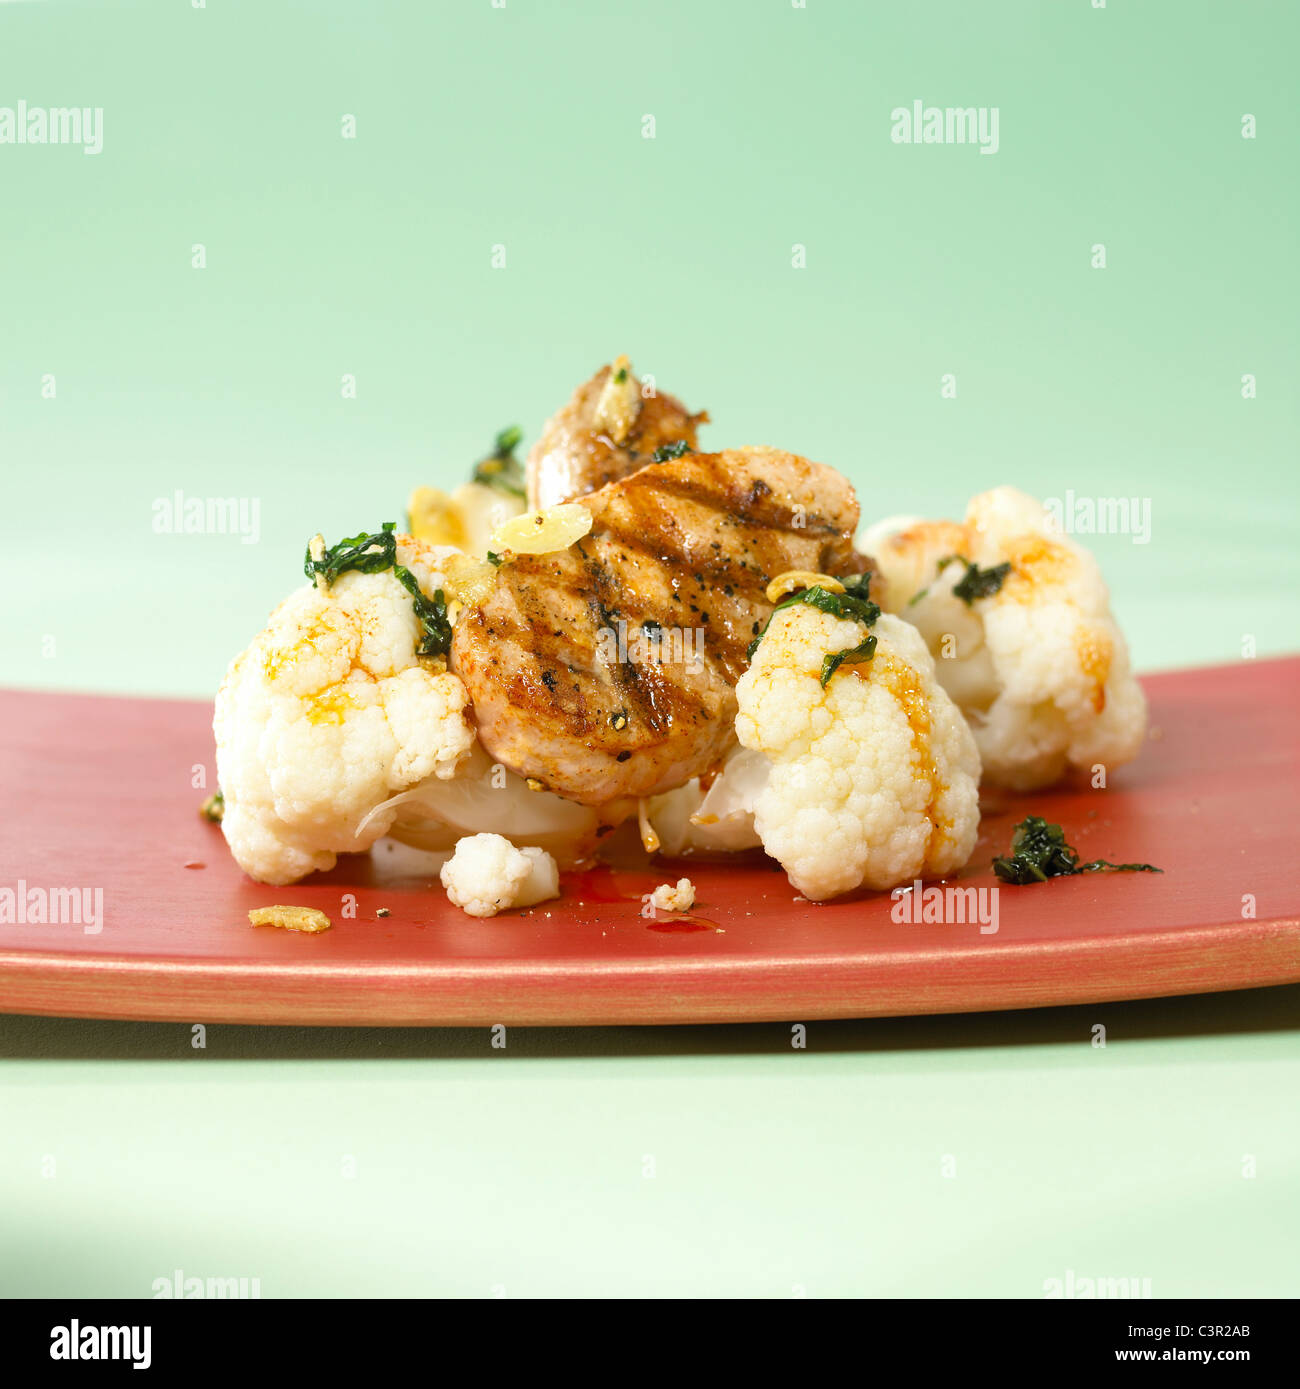 Blumenkohl, garniert mit gebratenem Kalbsfleisch in Platte auf grünem Hintergrund Stockfoto